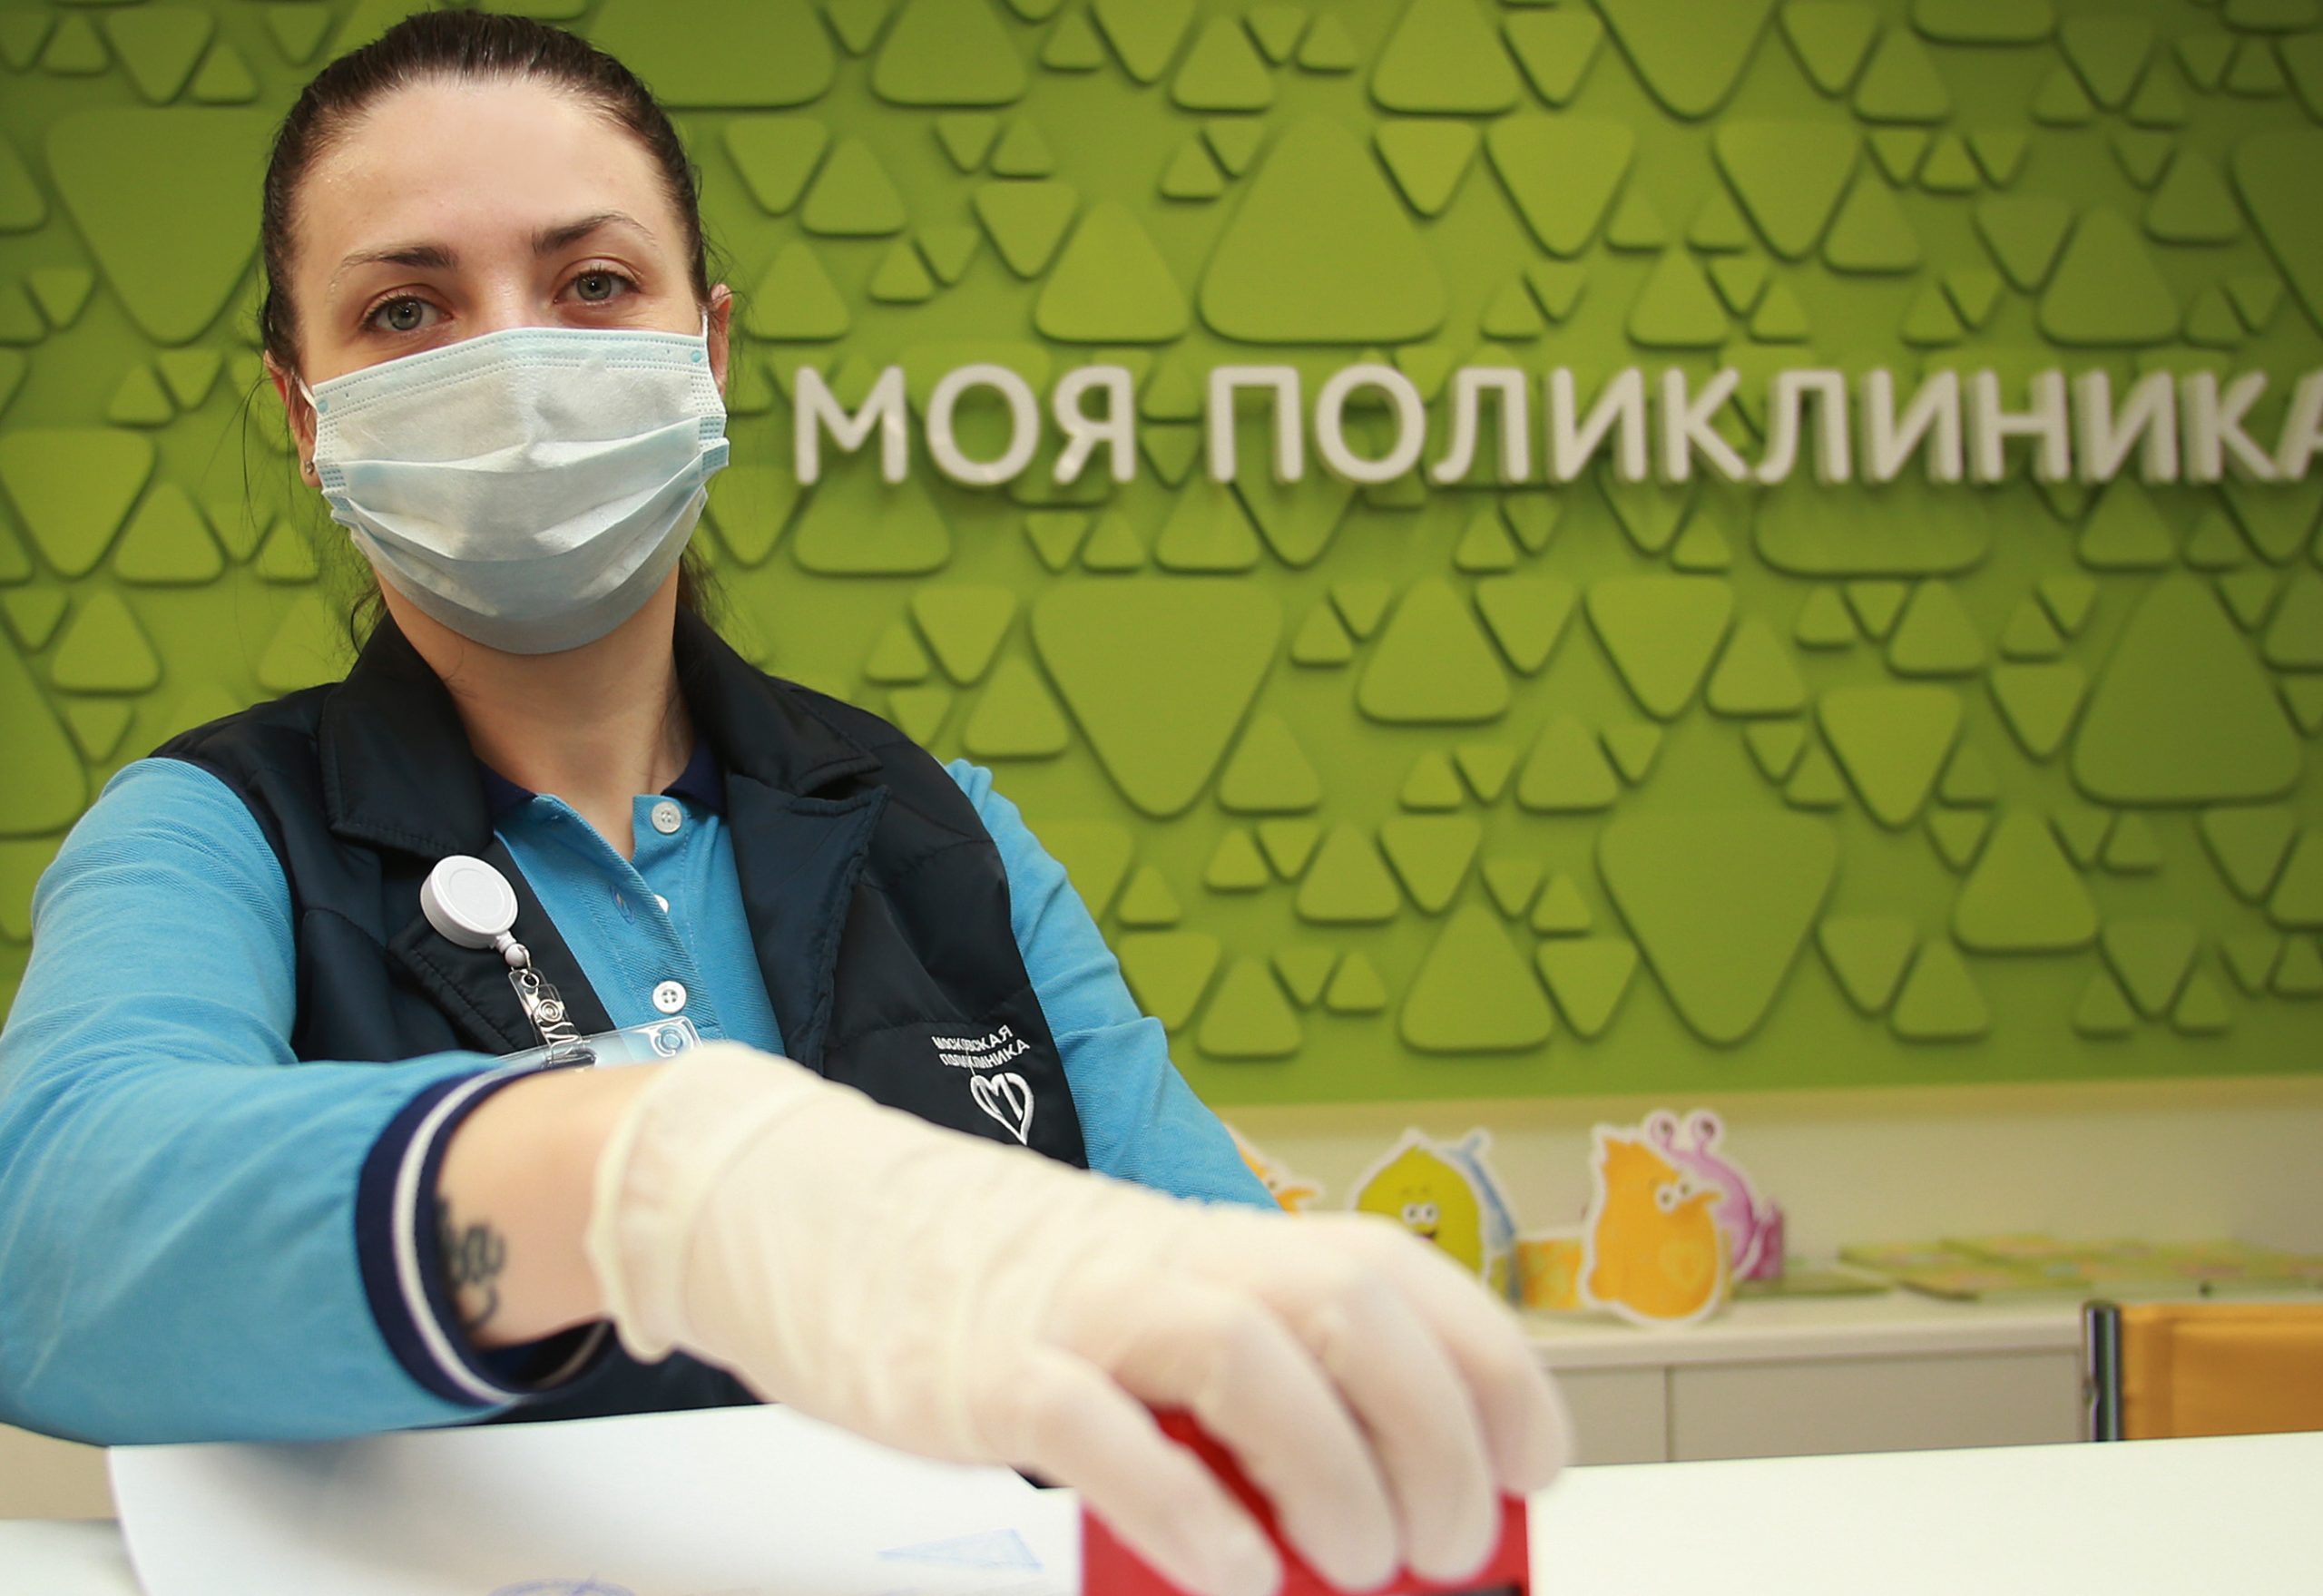 Новый московский стандарт поликлиник внедрили в столице